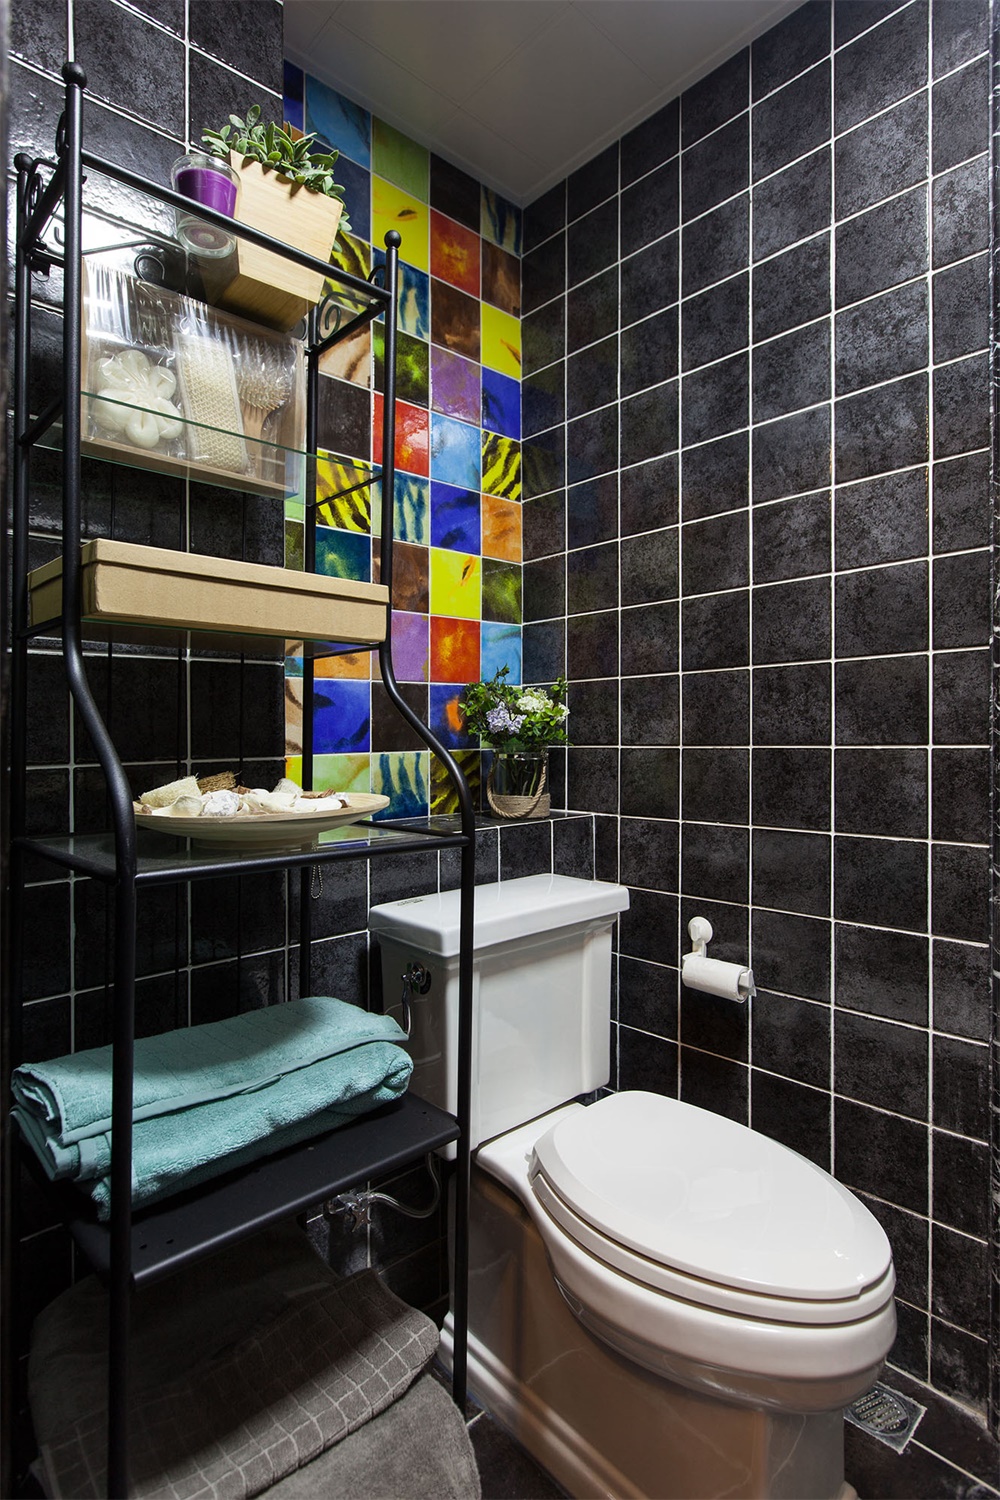 彩色瓷砖打破空间单调，使卫浴更具艺术质感，空间虽小，但设计感十分强大。